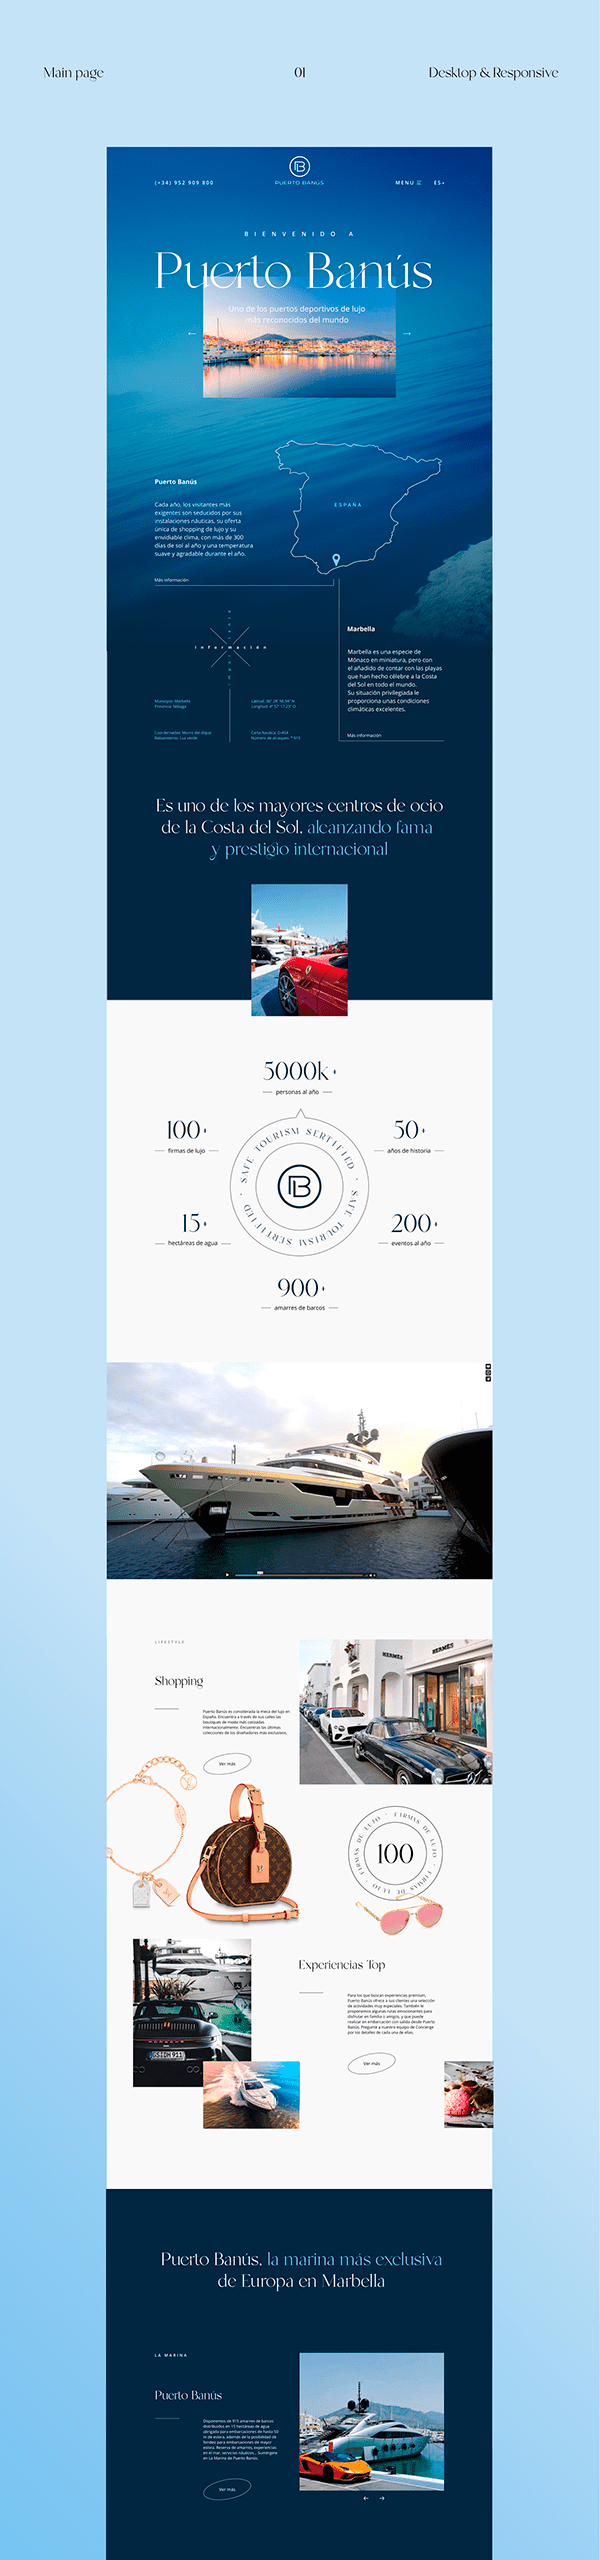 Puerto Banús Website Redesign Concept